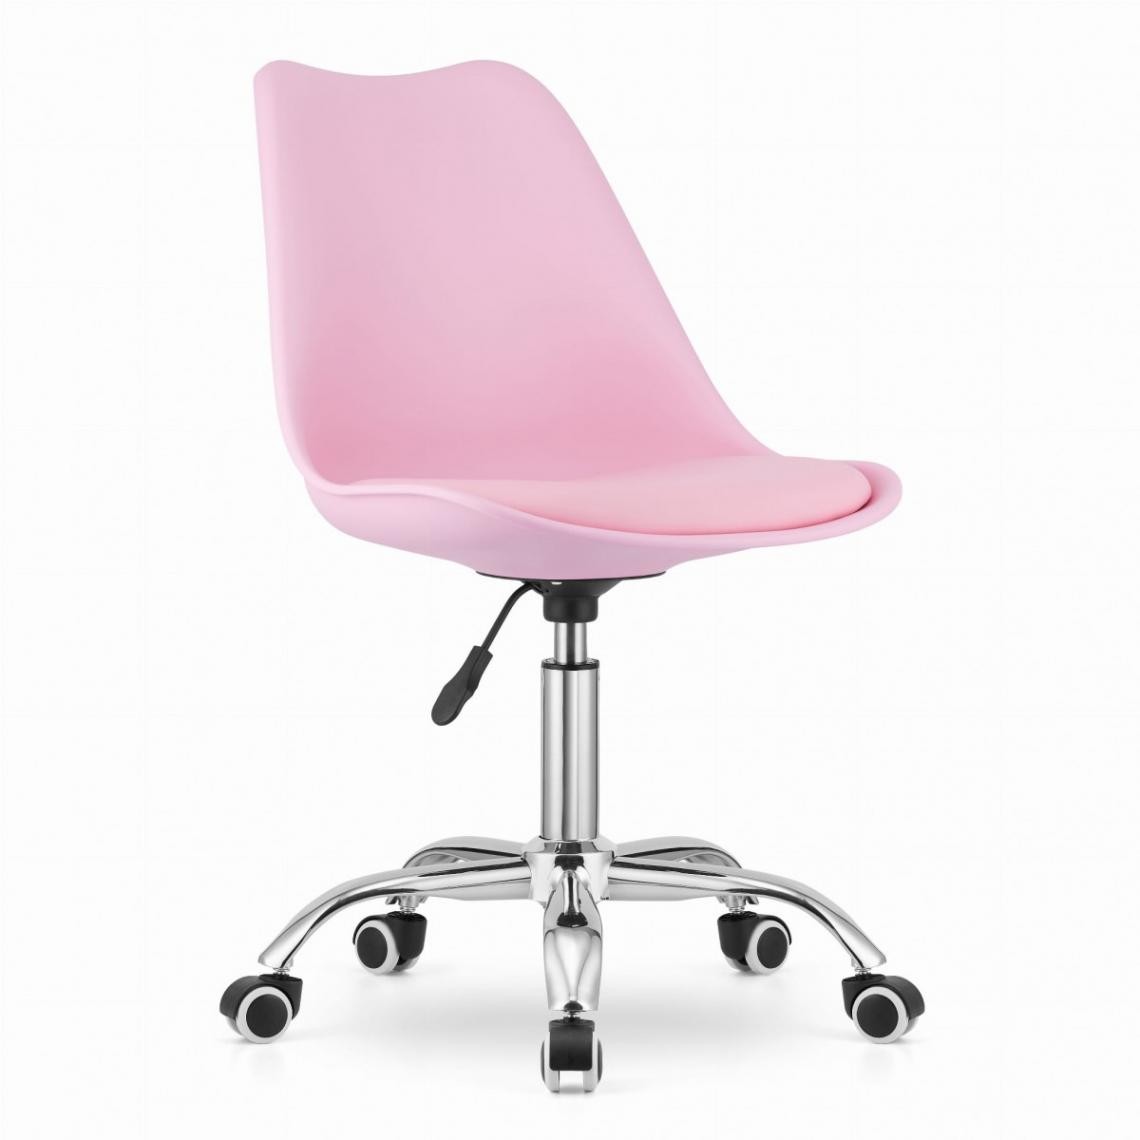 Hucoco - ALBADI - Fauteuil pivotant style moderne bureau/chambre d'enfant - 91.5x56.5x48.5 cm - Chaise de bureau - Rose - Chaises